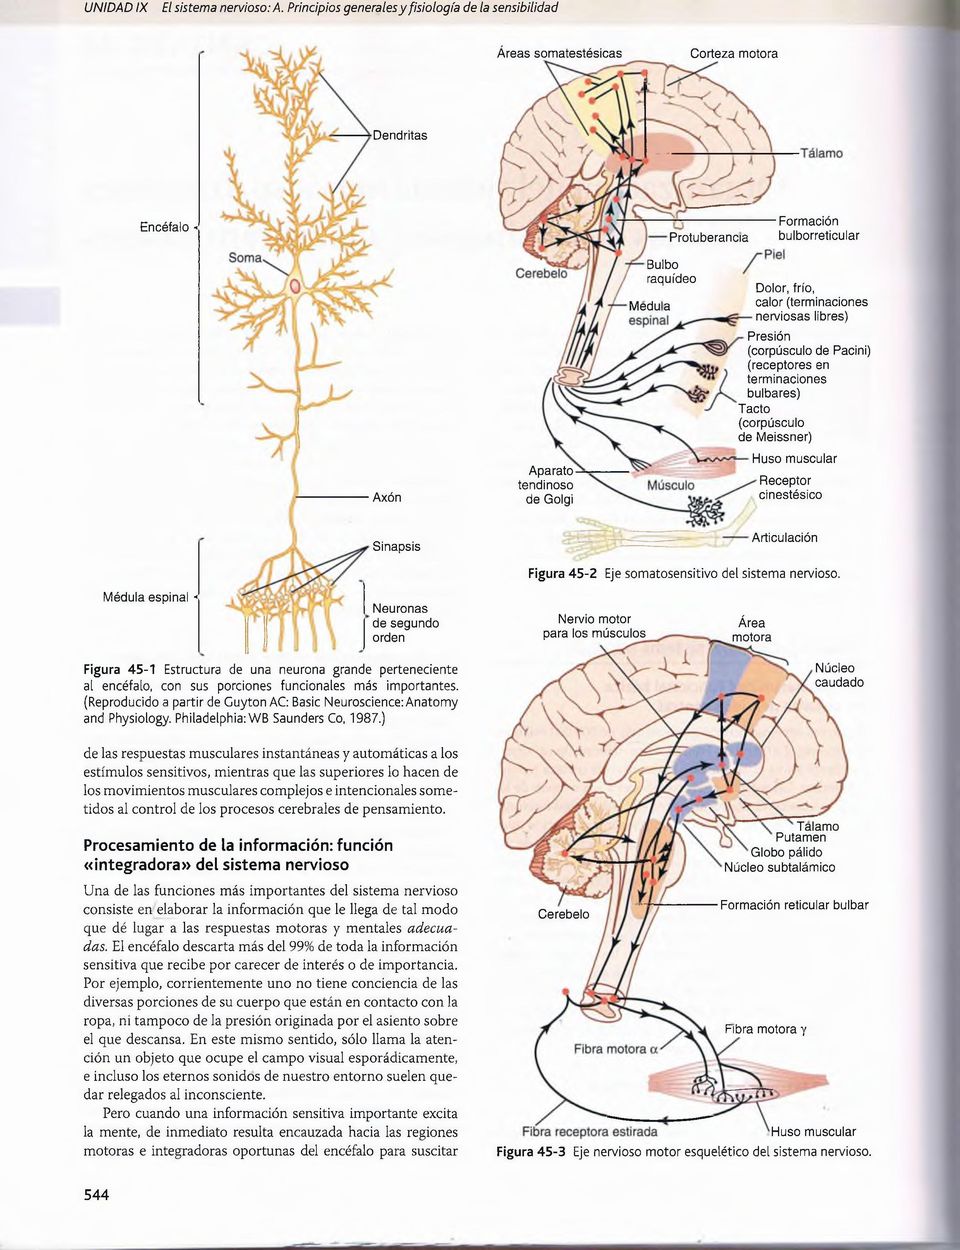 (terminaciones nerviosas libres) Presión (corpúsculo de Pacini) (receptores en terminaciones bulbares) Tacto (corpúsculo de Meissner) Axón Aparato tendinoso de Golgi Huso muscular Receptor